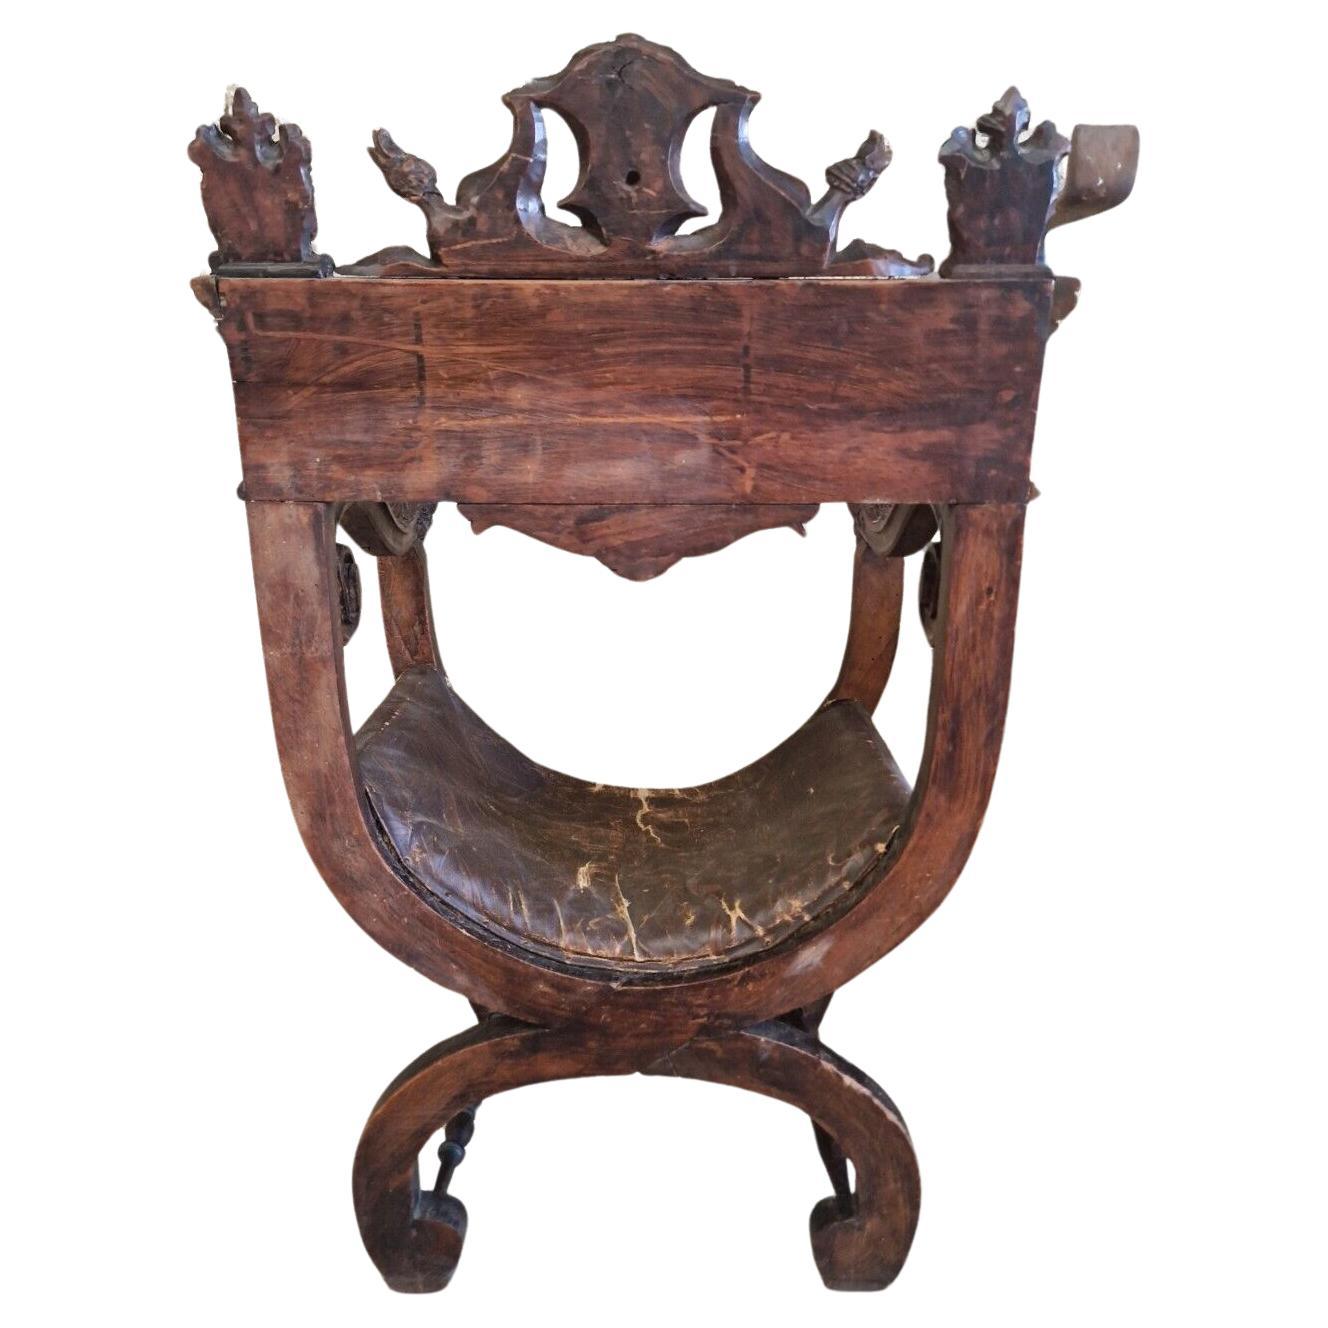 Fabelhafter französischer Dagobert-Sessel im Renaissance-Stil 

Handgeschnitzte Holzarbeiten von mythischen Kreaturen, CIRCA Anfang 1800.

Originaler unrestaurierter Zustand, das Sitzleder ist abgenutzt und lose. Es zeigt eine Fülle von Charakter